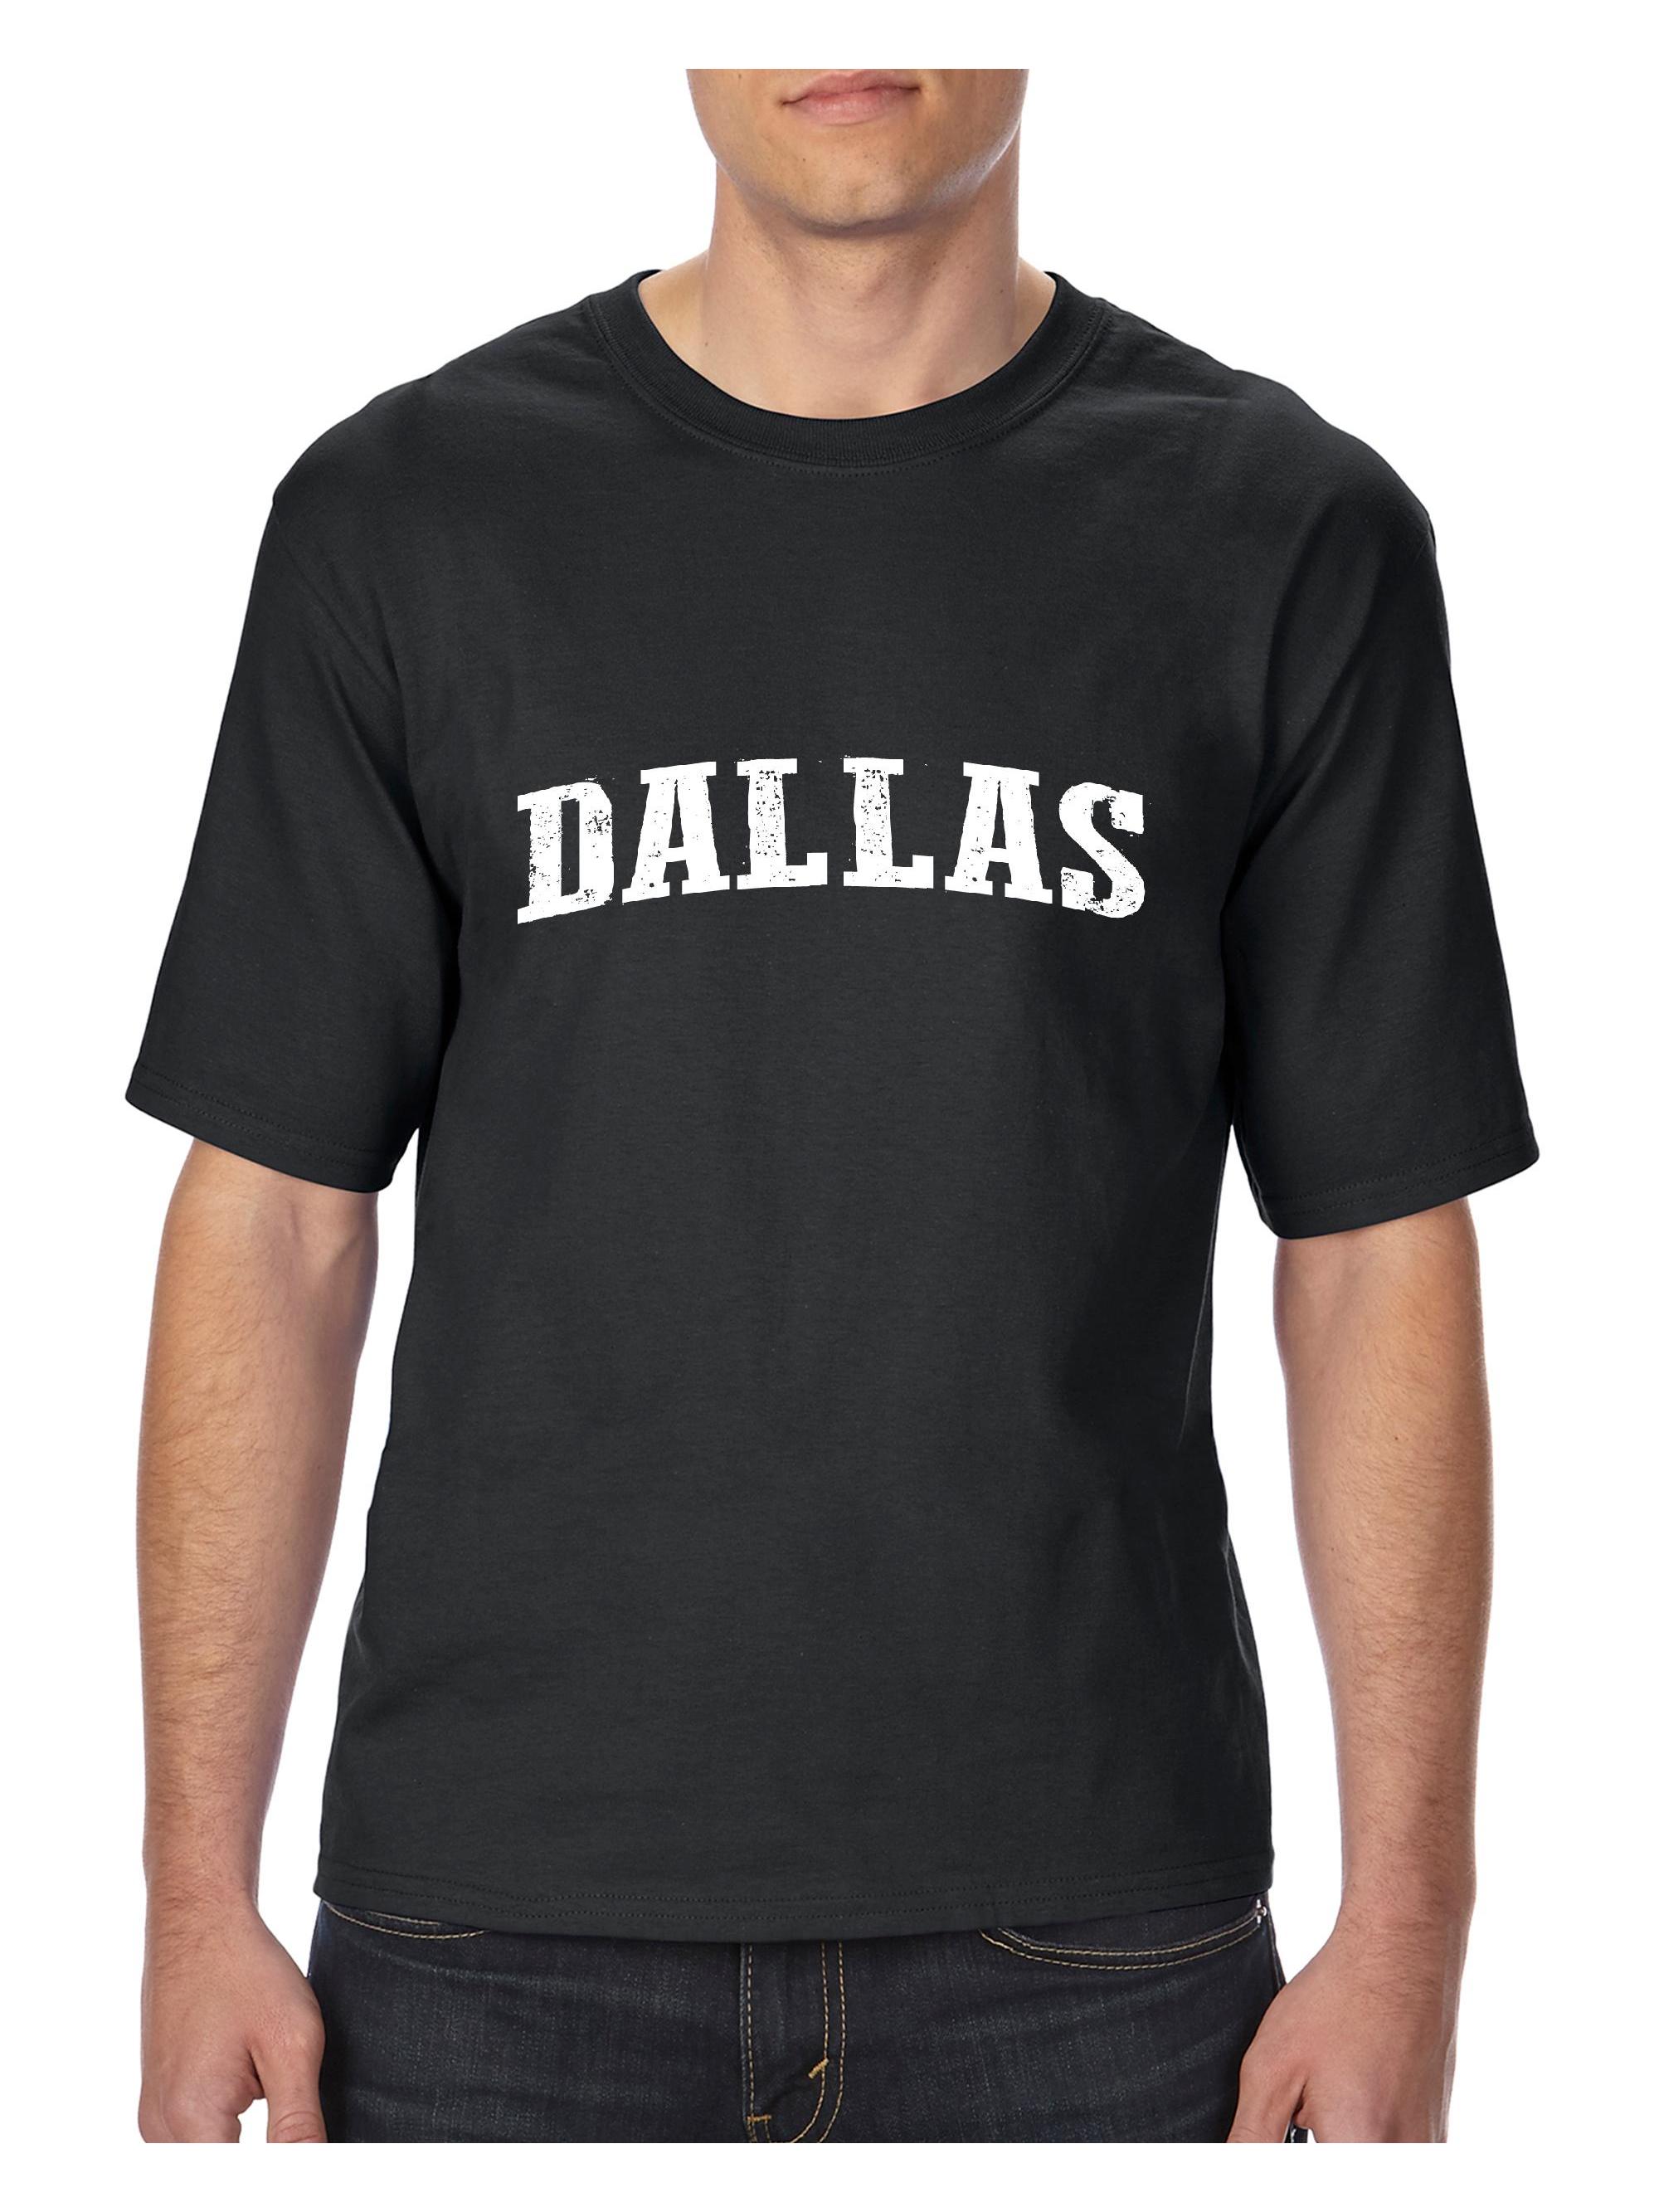 Big Men's T-Shirt - Dallas - image 1 of 5